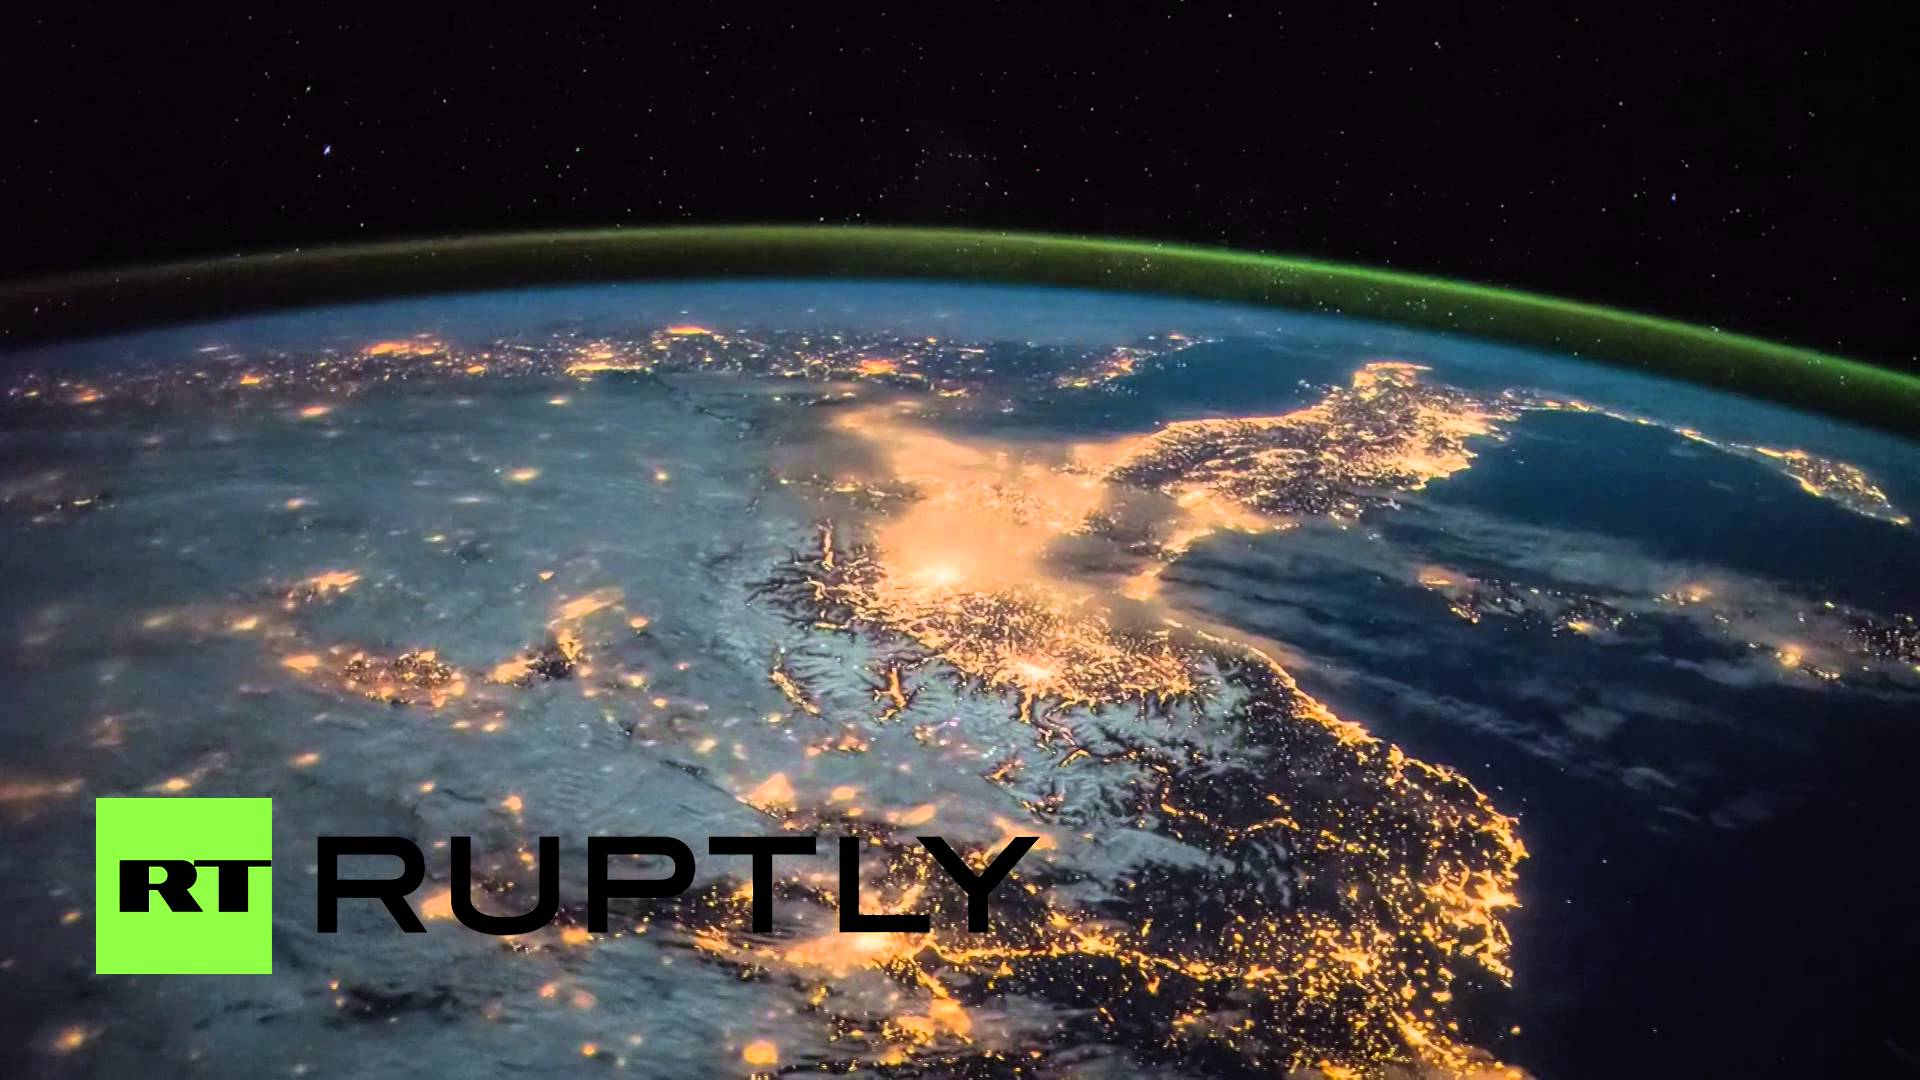 صور فضائية مذهلة للقارة الأوروبية